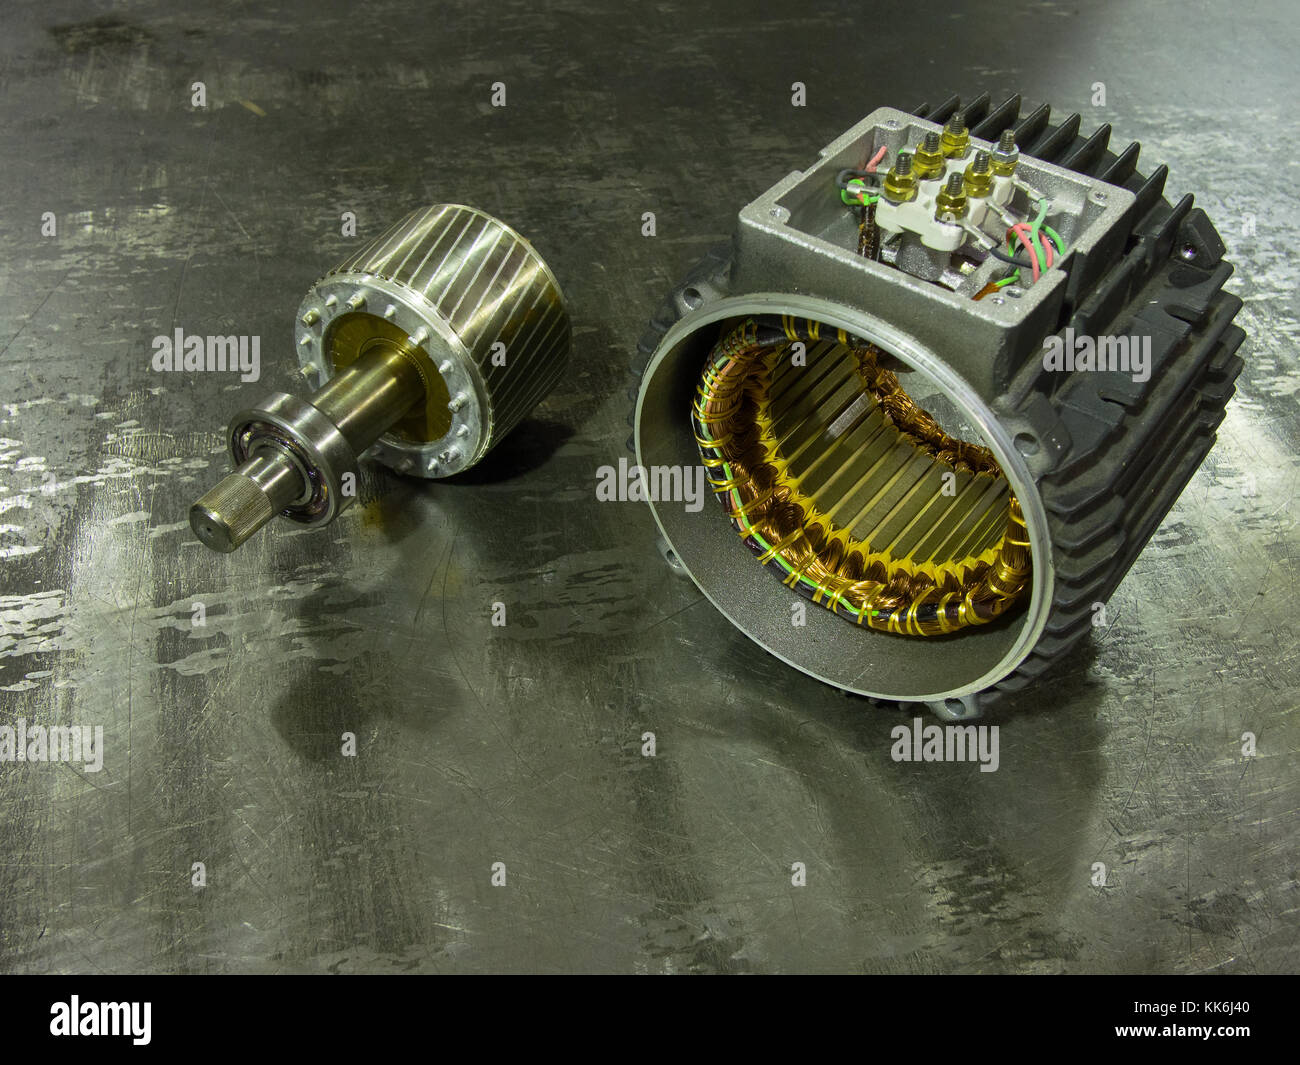 Industriali smontato motore elettrico ad induzione: rotore sulla sinistra statoron destra Foto Stock